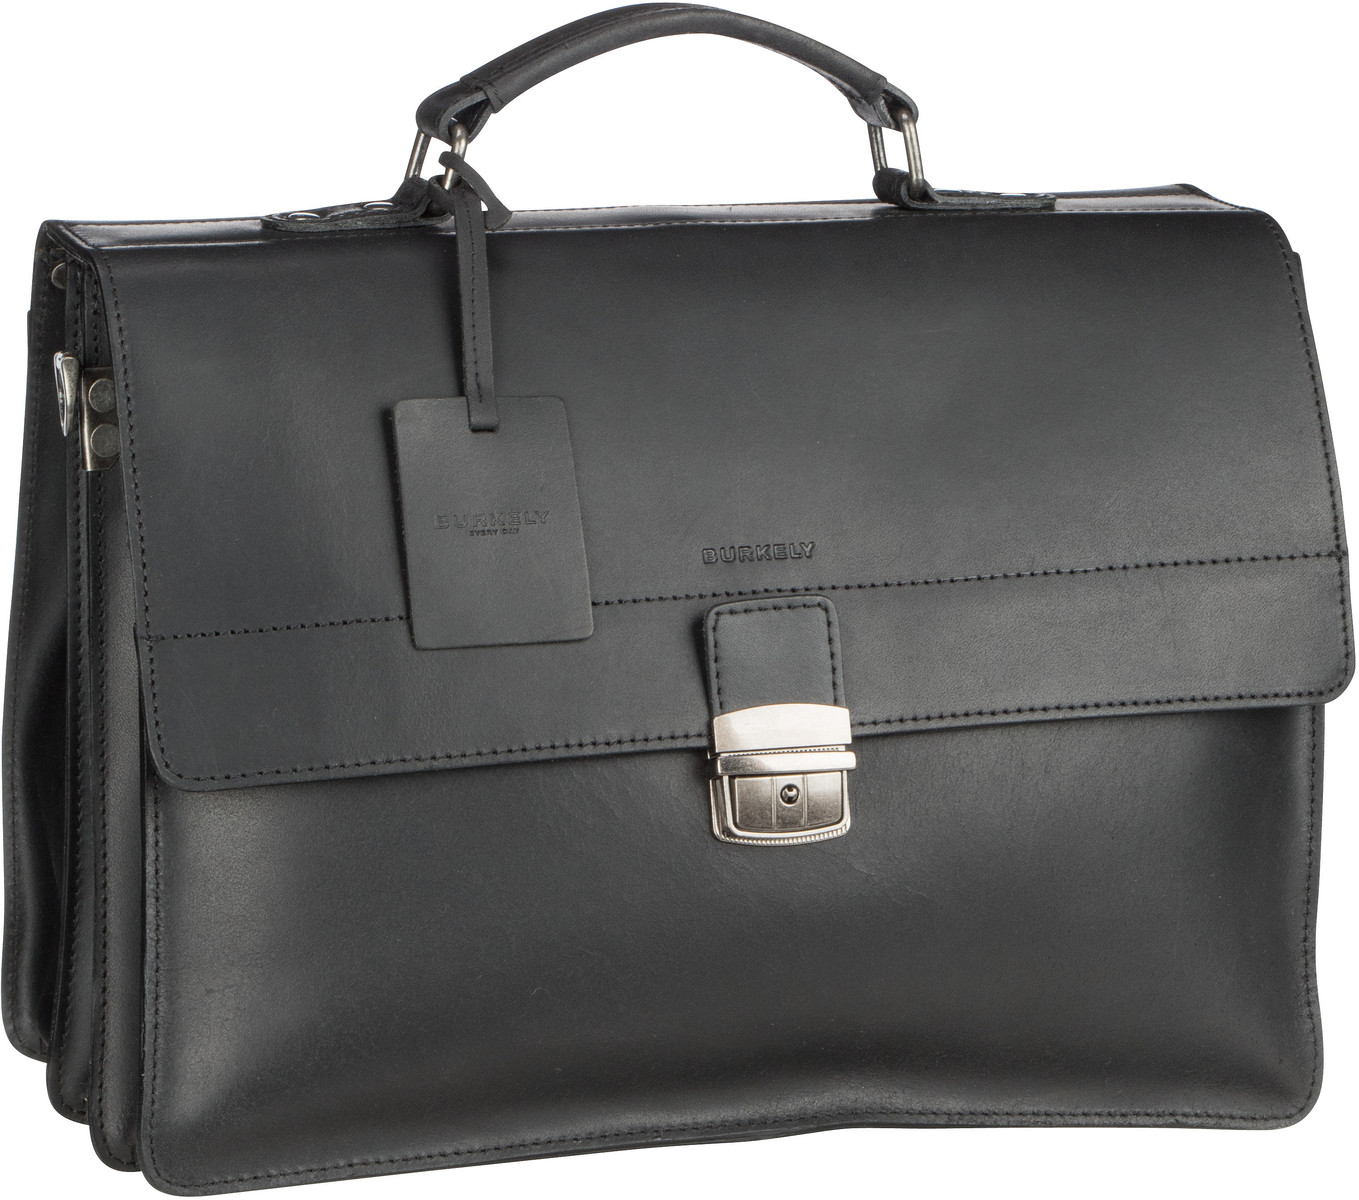 Burkely Vintage Dean Briefcase 6379 - Black